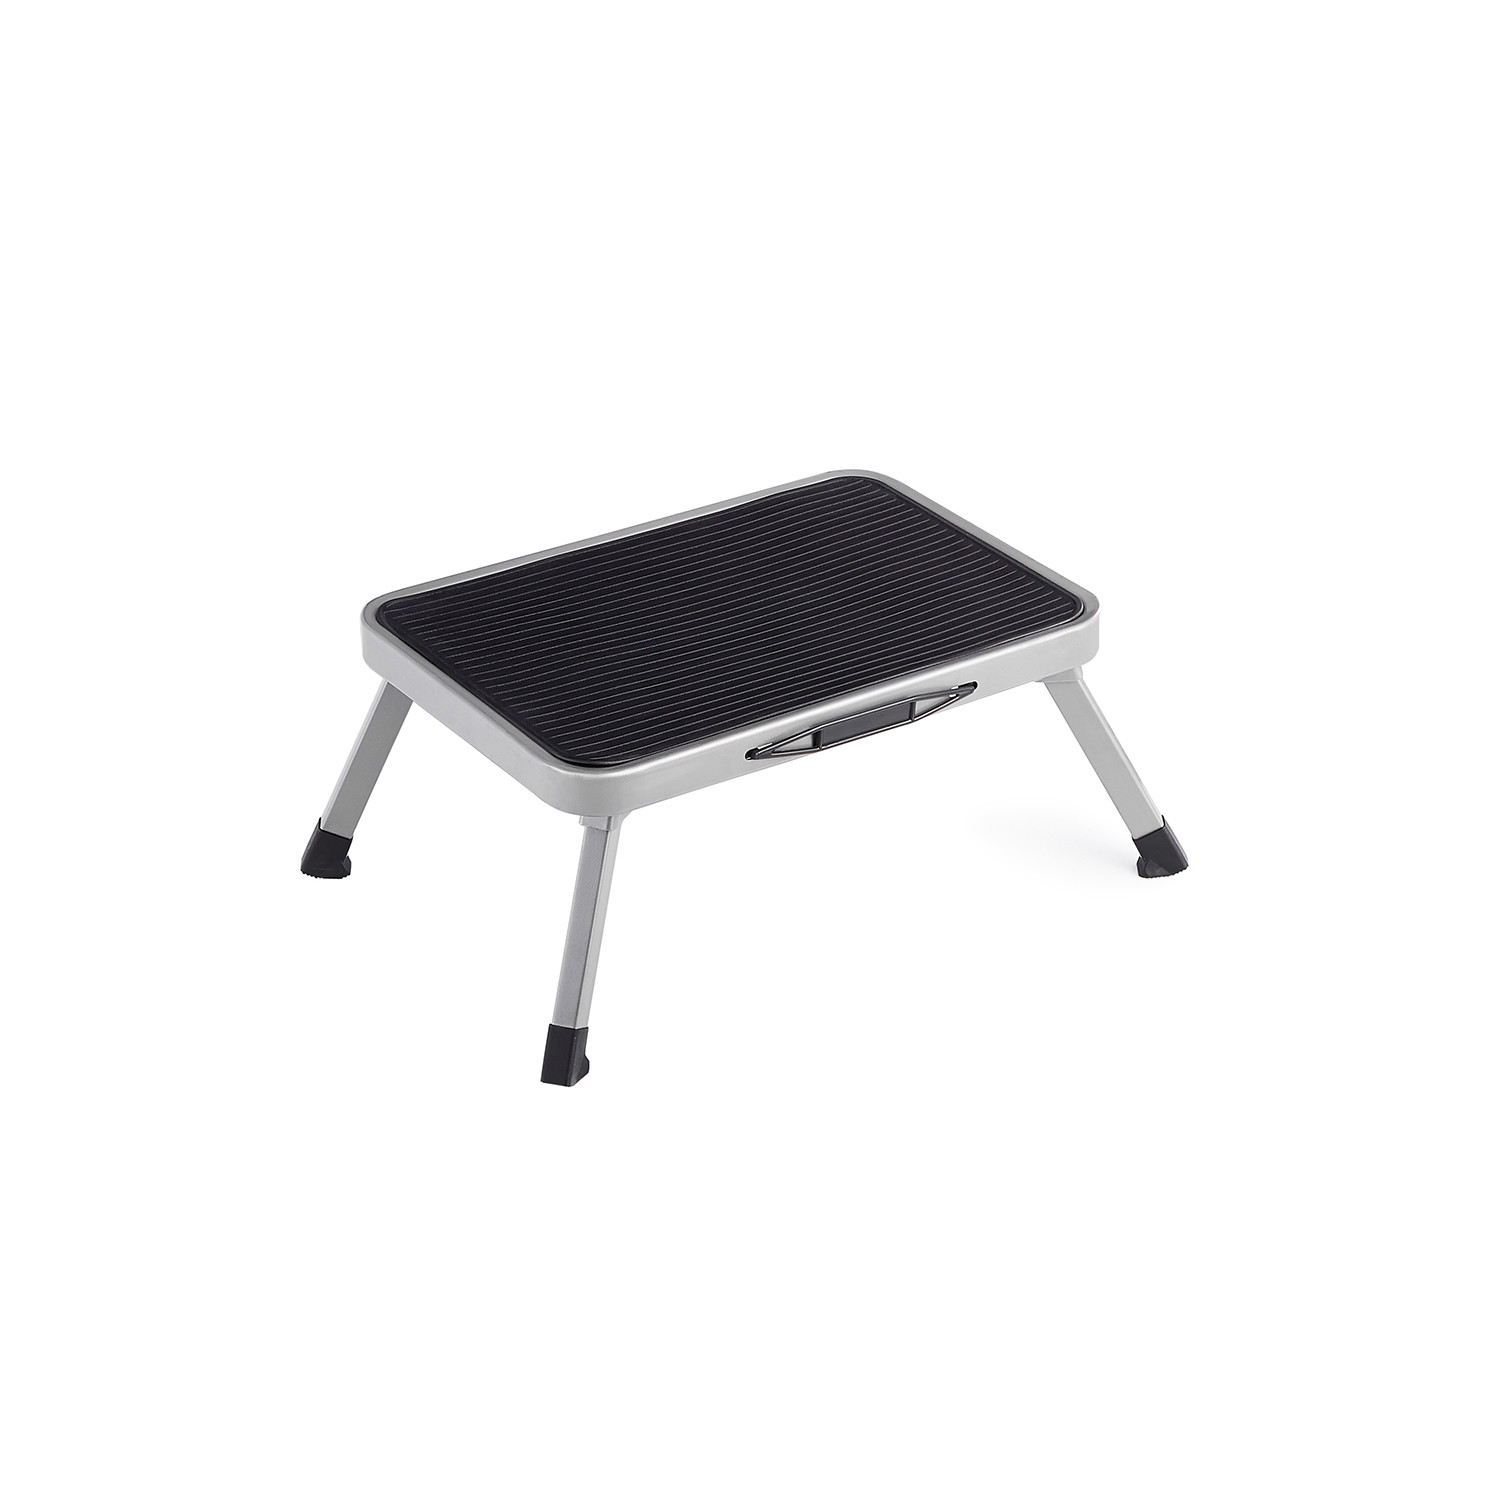 Rozkládací malý stolek GSL001G01